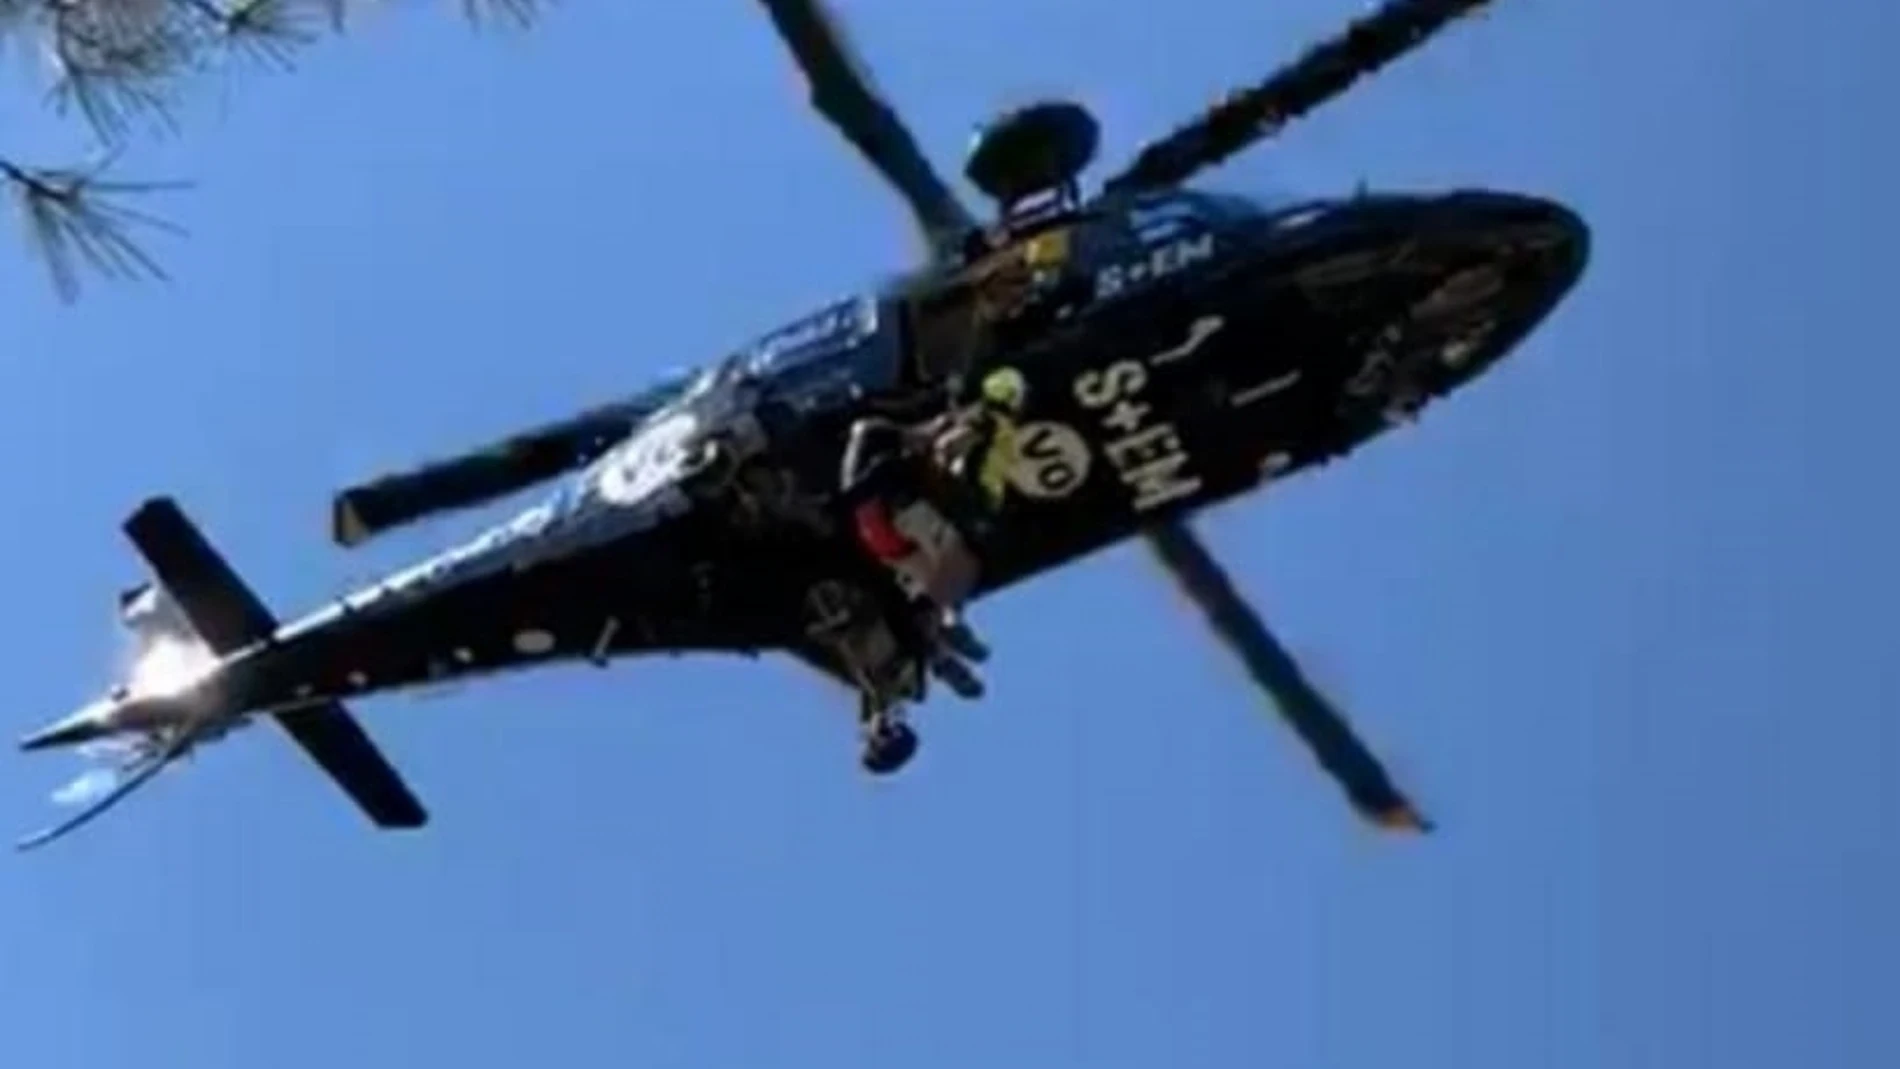 Valencia.-Sucesos.- Rescatan en helicóptero a un senderista indispuesto en una zona de difícil acceso de la Peña Cortada